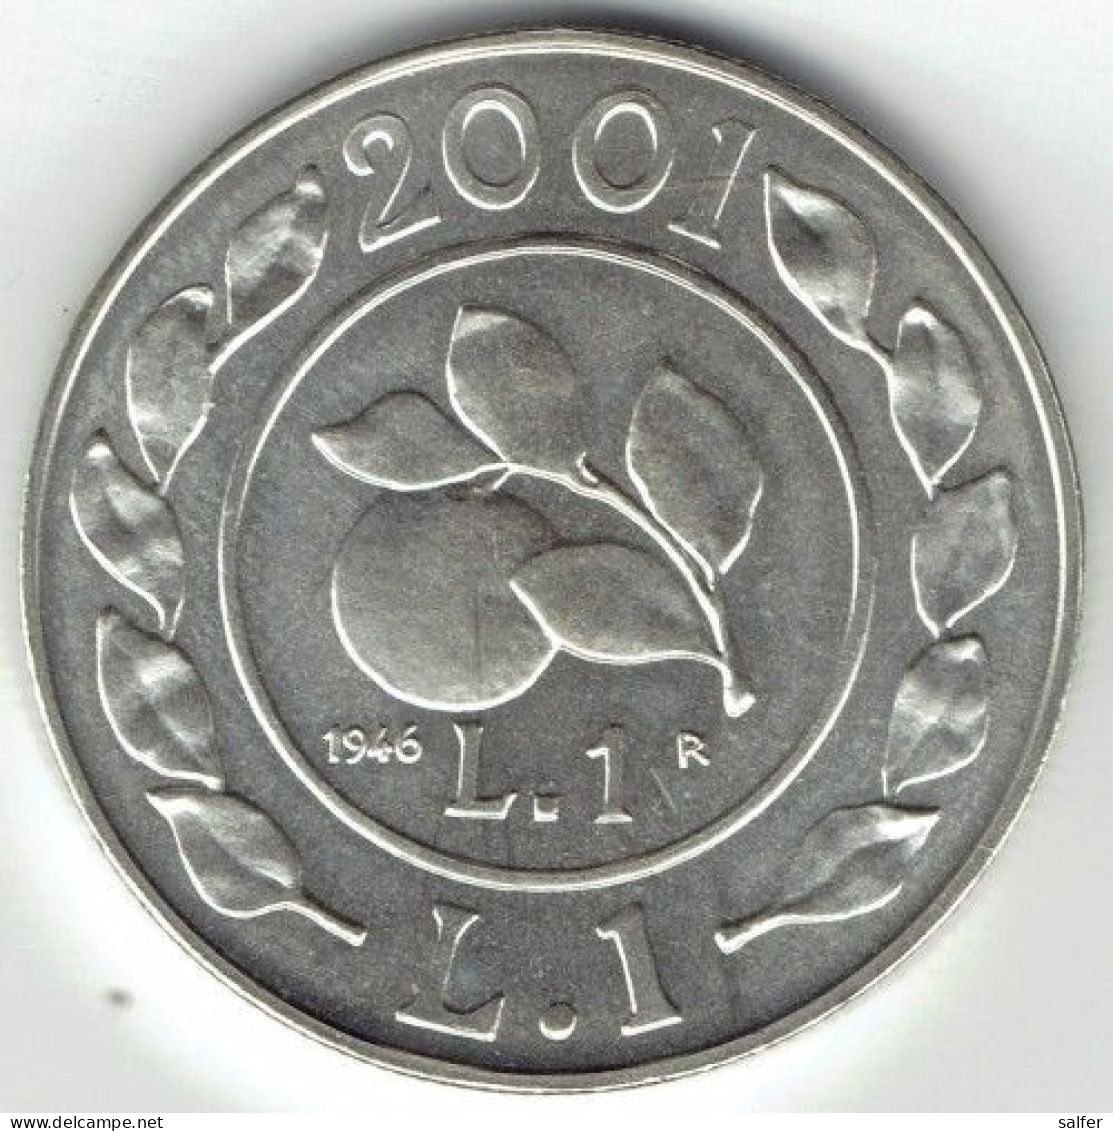 REPUBBLICA  2001  STORIA DELLA LIRA  III DITTICO   Lire 1 X 2  AG - Gedenkmünzen